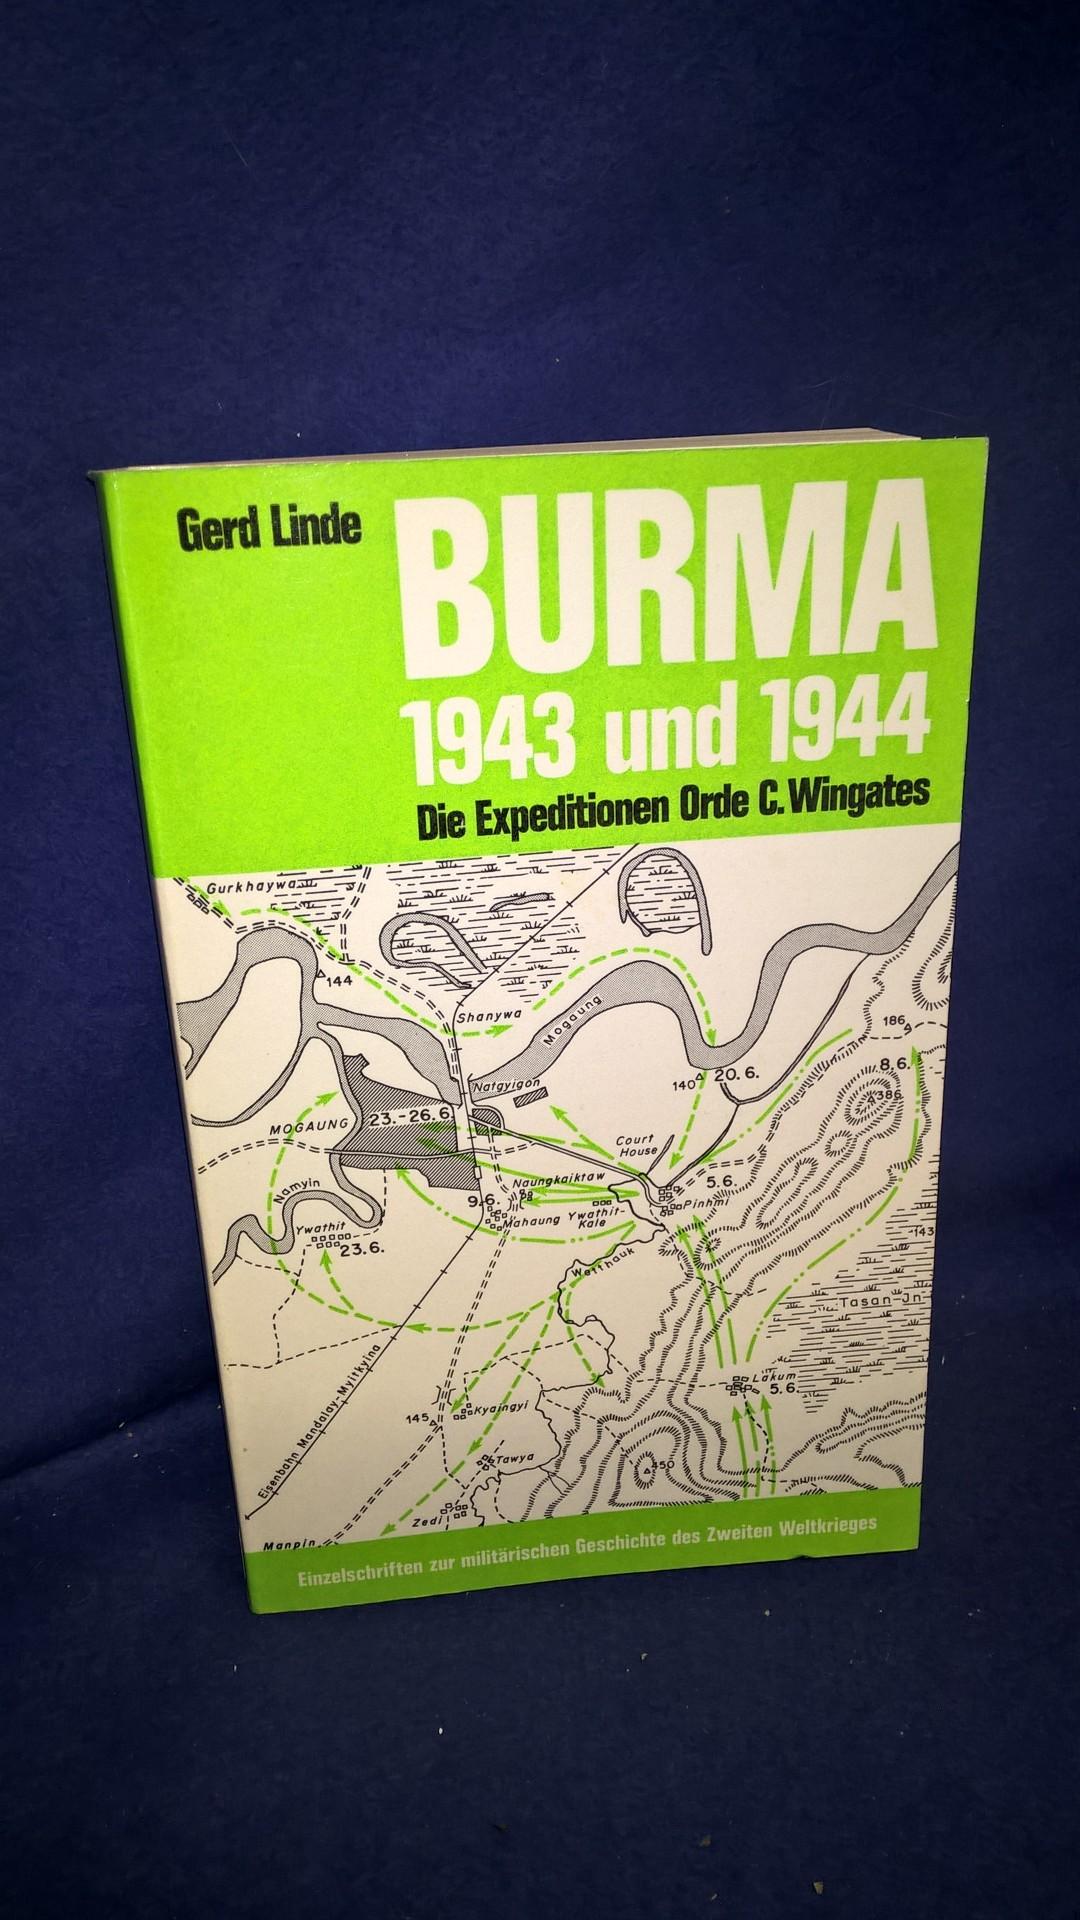 Burma 1943 und 1944 - Die Expeditionen Orde C.Wingates. Aus der Reihe: Einzelschriften zur Militärischen Geschichte des 2.Weltkrieges - Band 10.